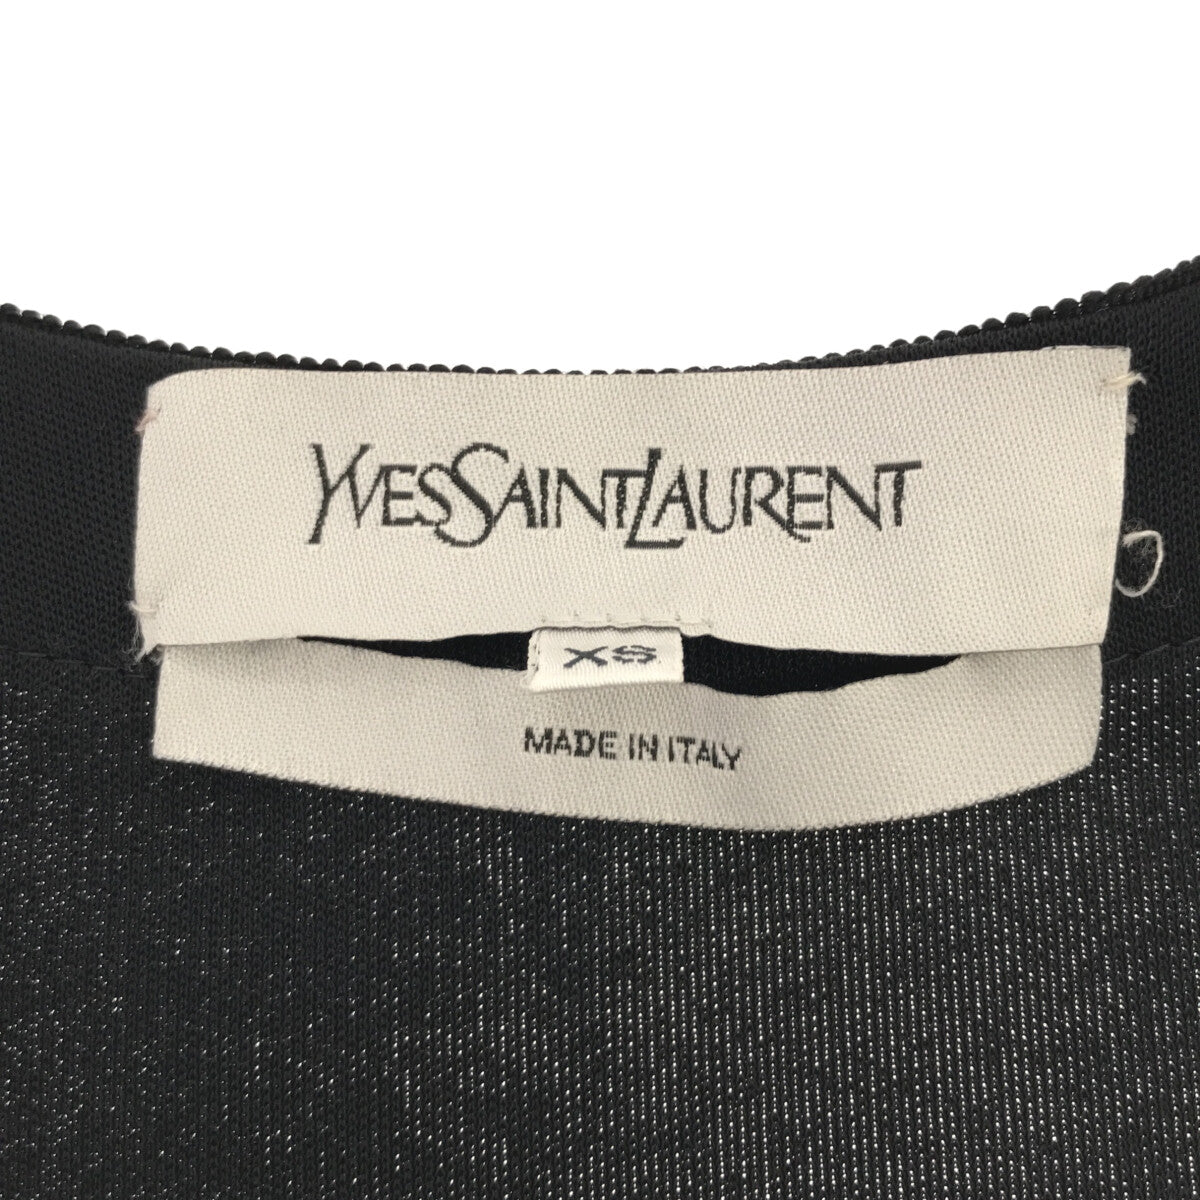 YVES SAINT LAURENT / イヴサンローラン | フロントギャザーデザイン トップス | XS | ネイビー | レディース